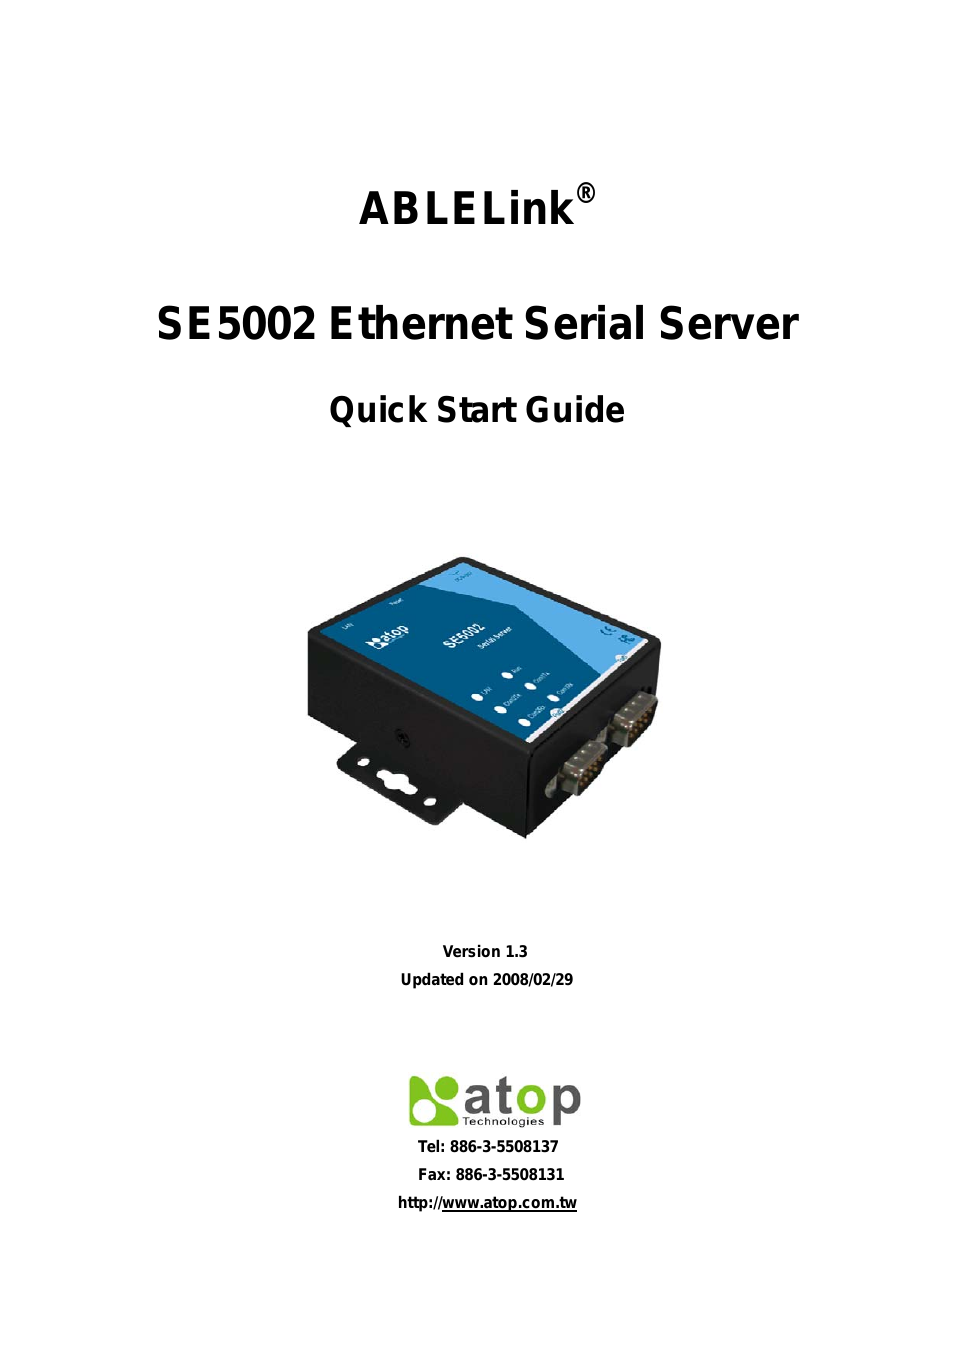 SE5002 Installation Guide